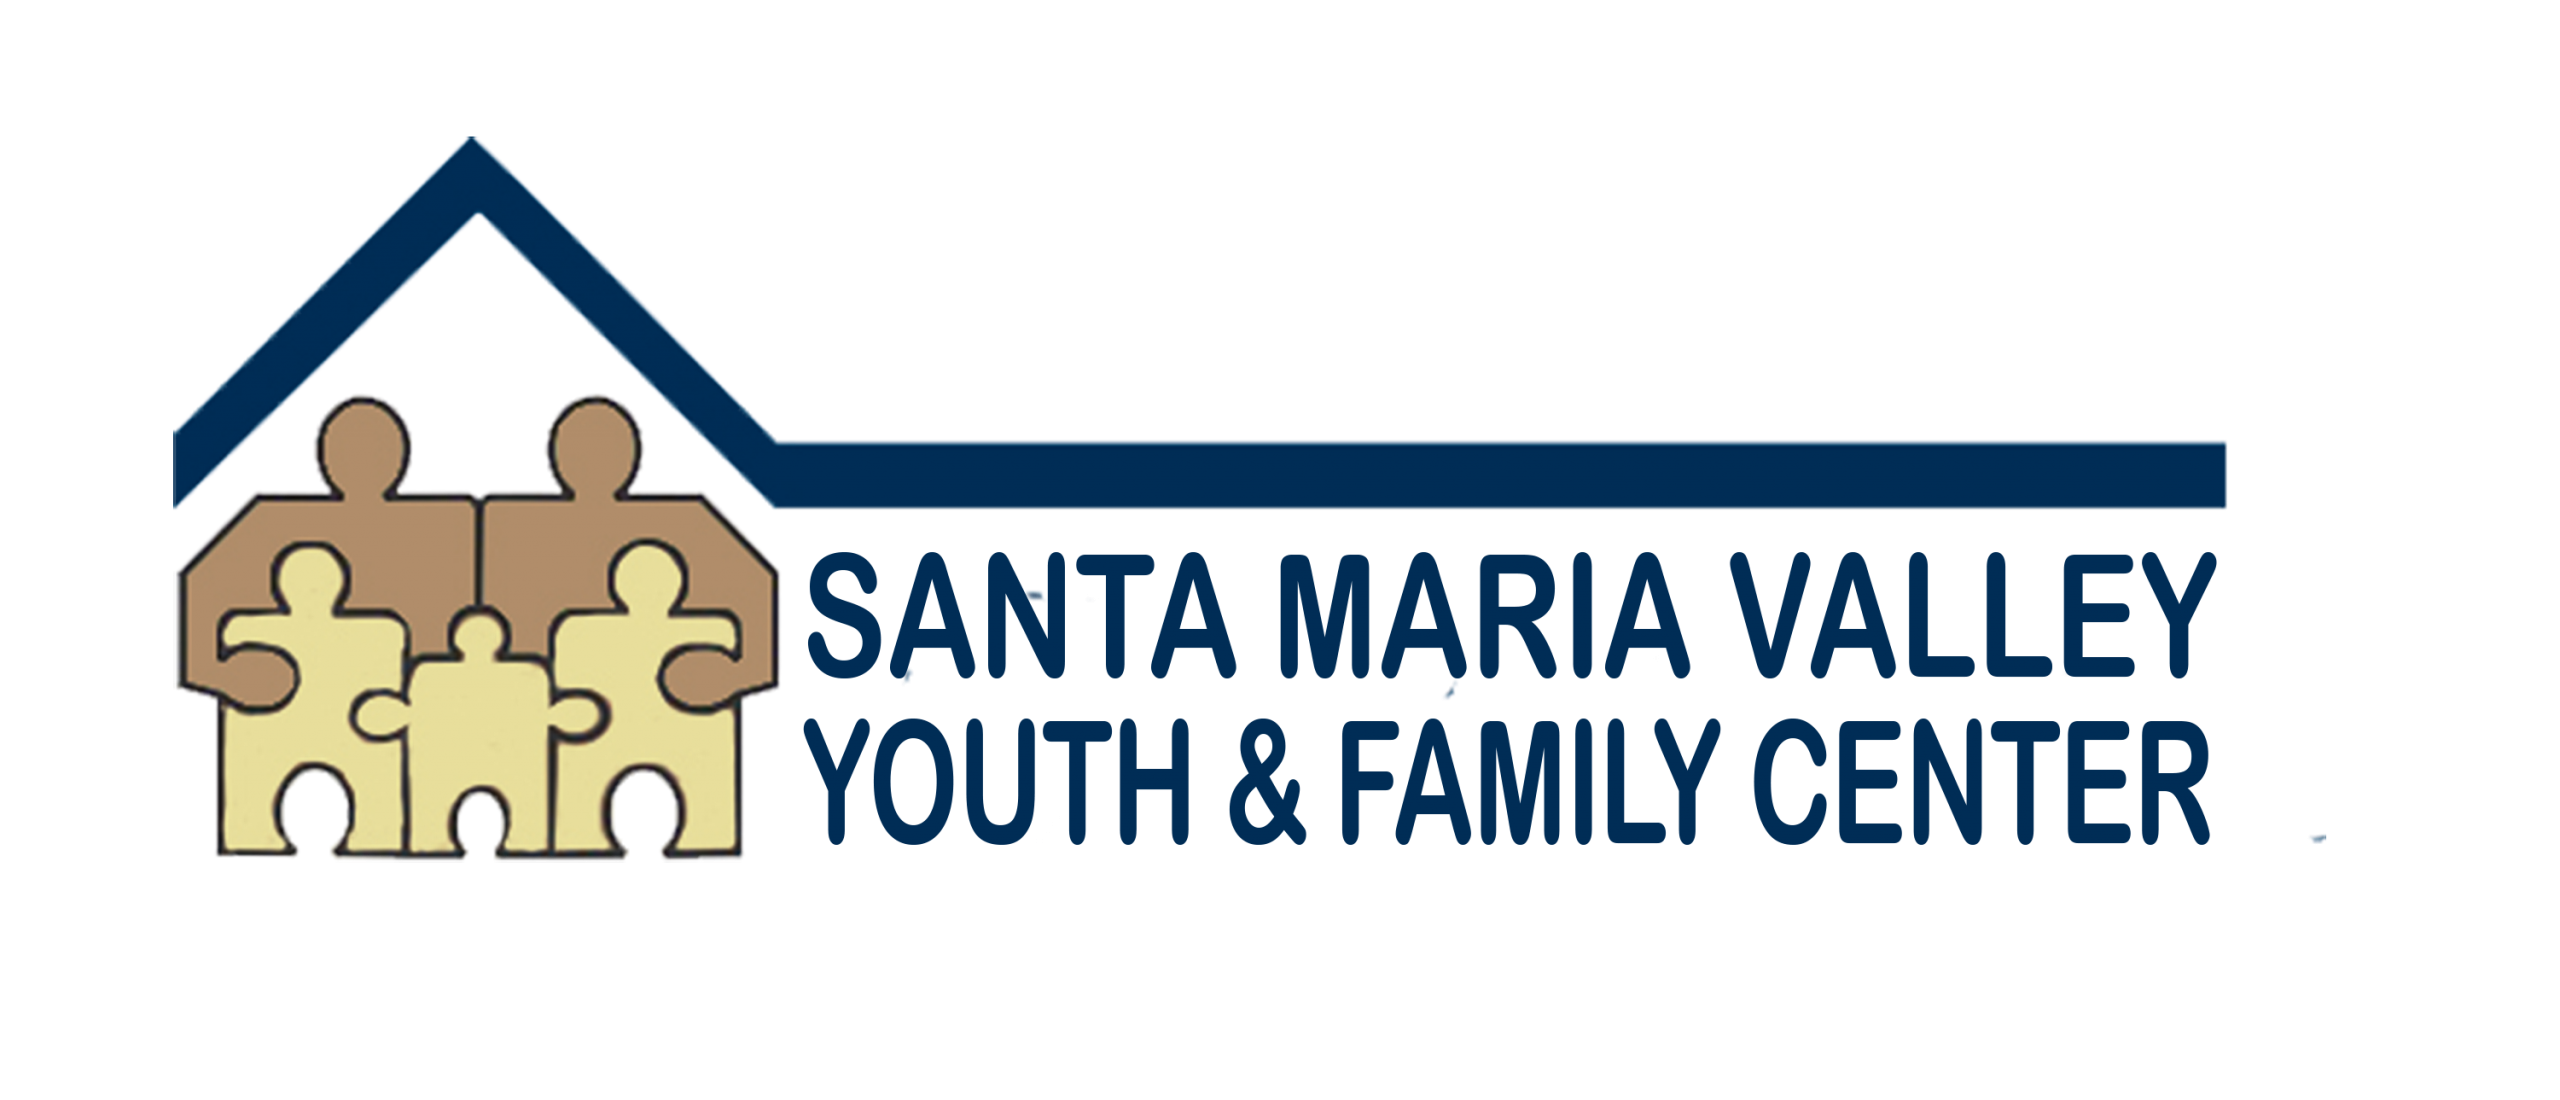 Santa Maria Valley Youth & Family Center